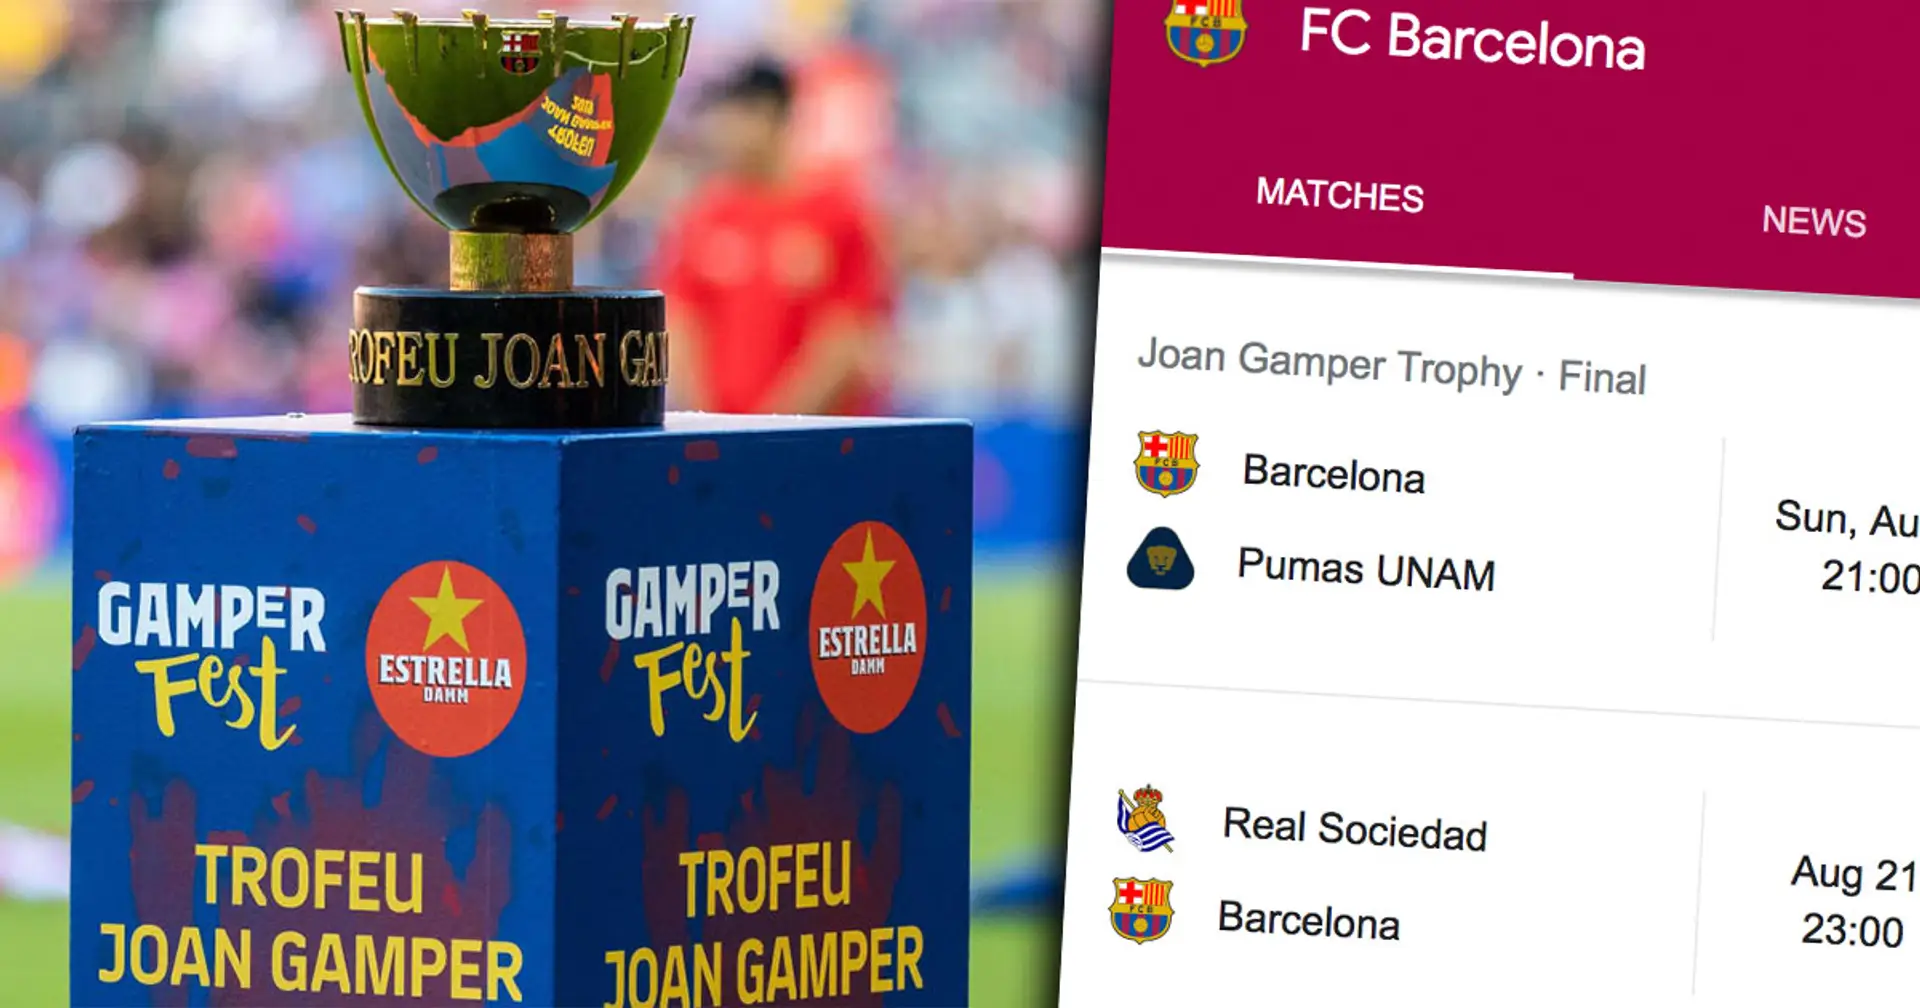 Joan Gamper Trophy coming up: Barca's next 5 fixtures